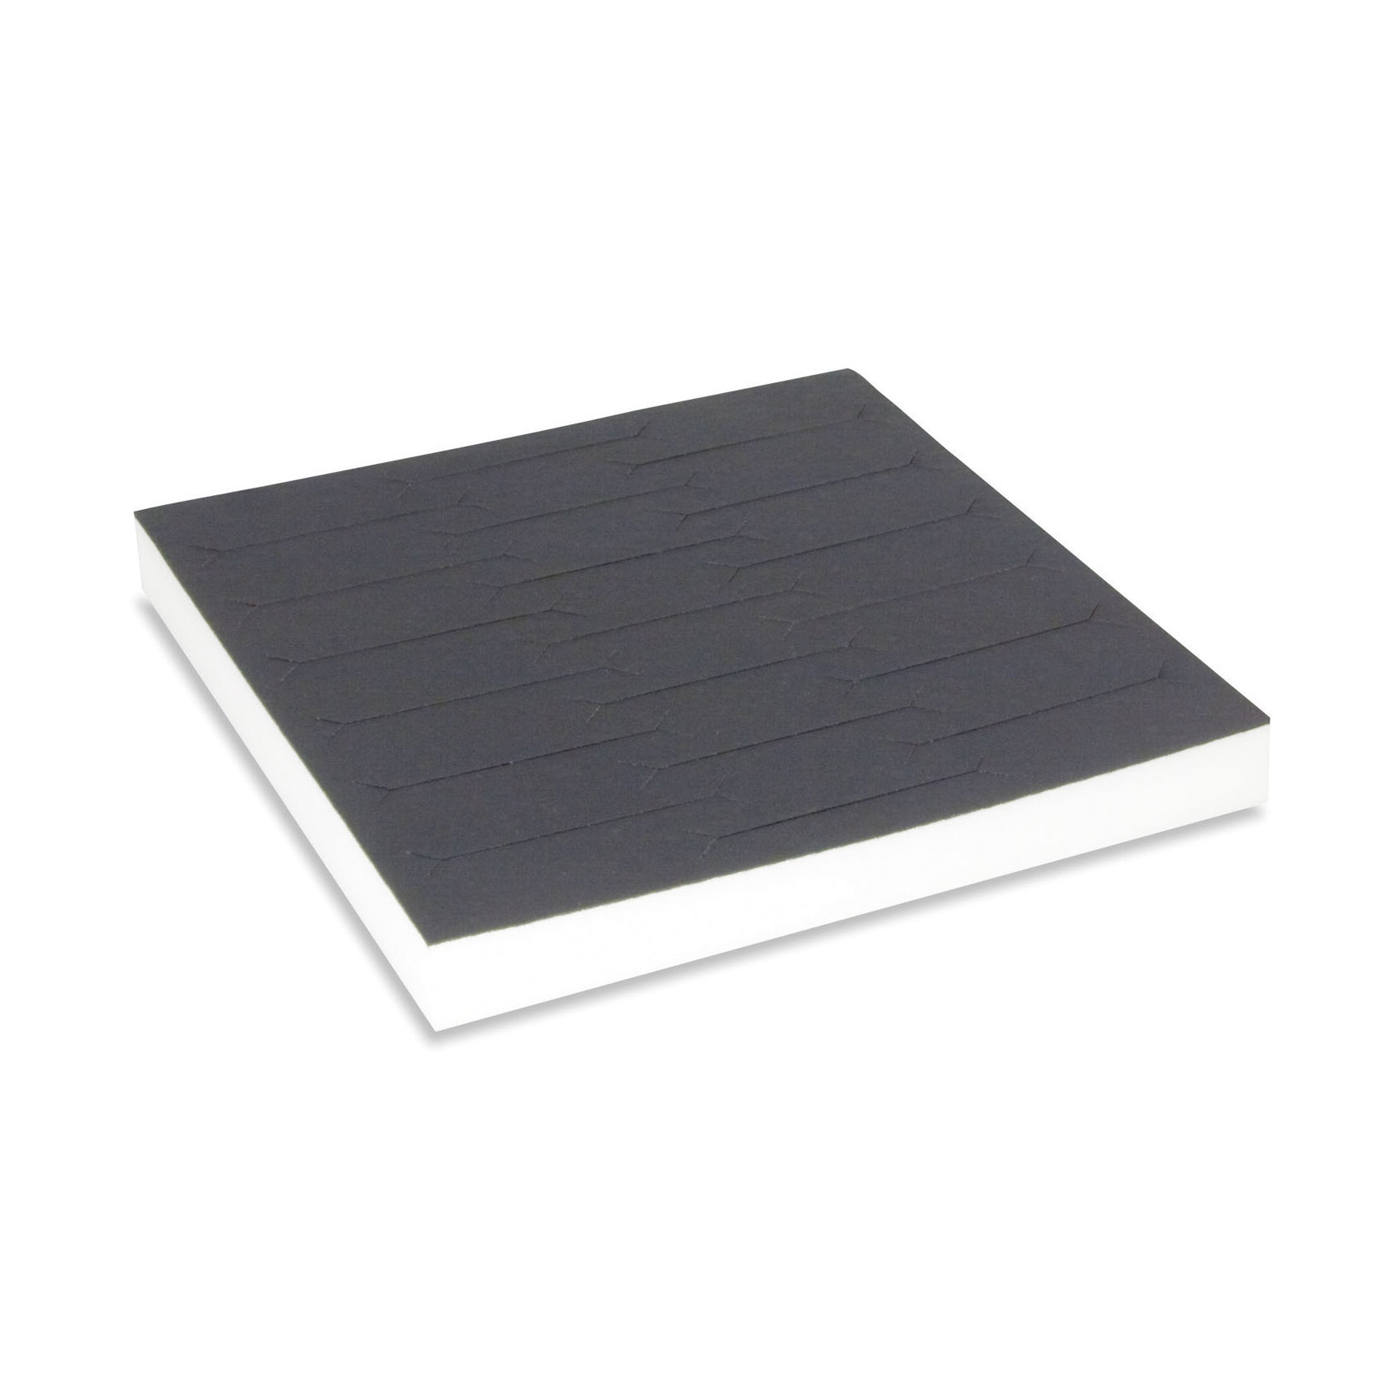 Tray System Einlage, schwarz, für 19 Armreife, 224 x 224 mm - 1 Stück